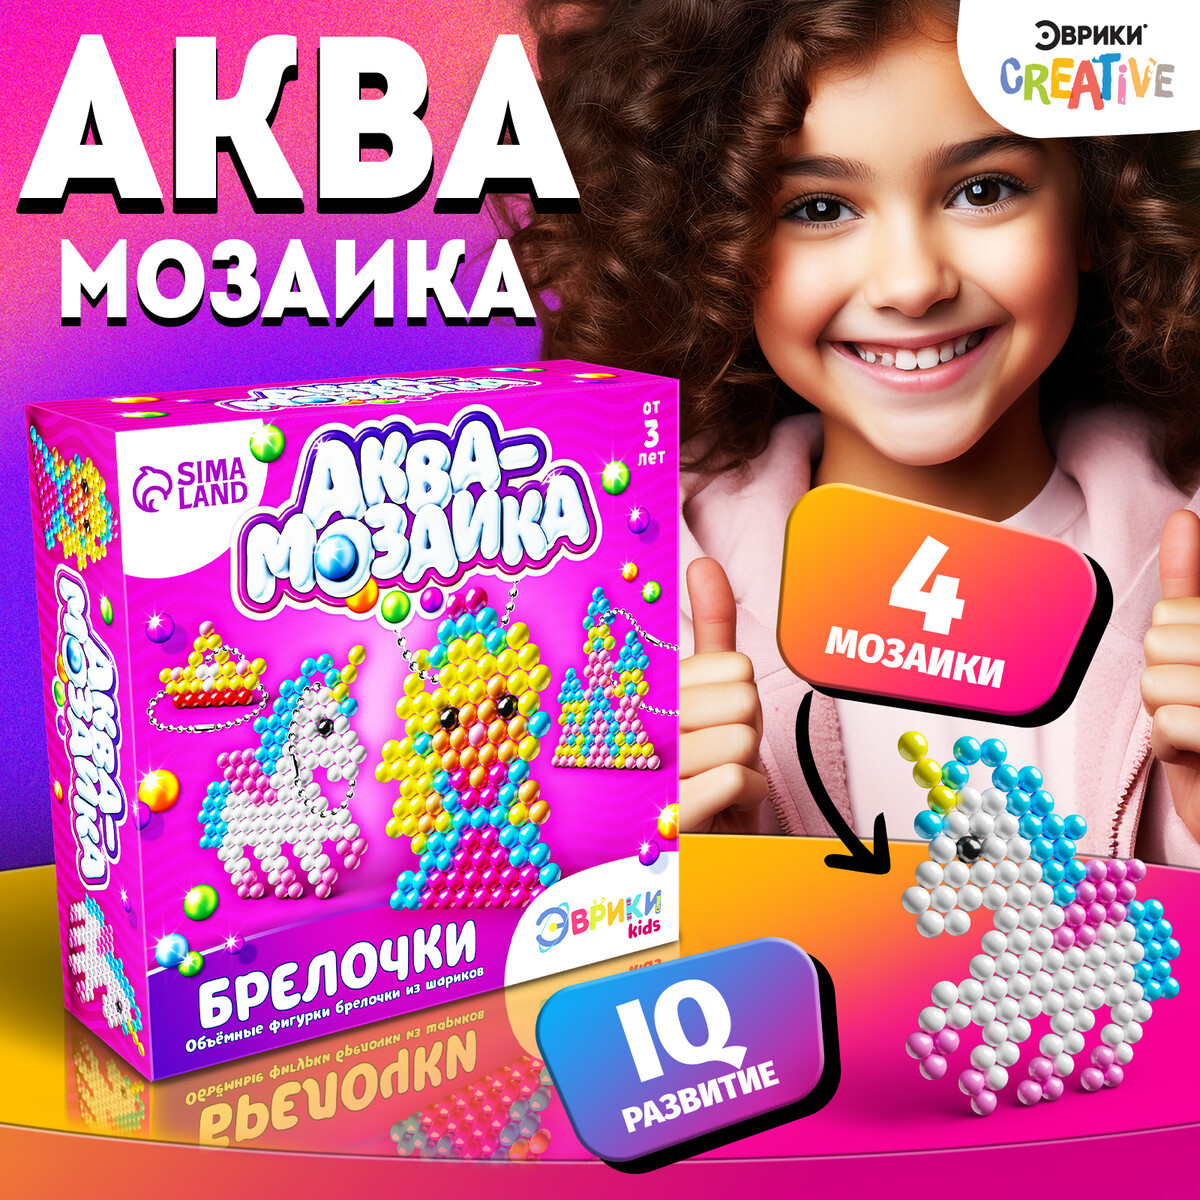 Аквамозаика для детей по русски обо всем учебник для детей 10 13 лет из русскоговорящих семей